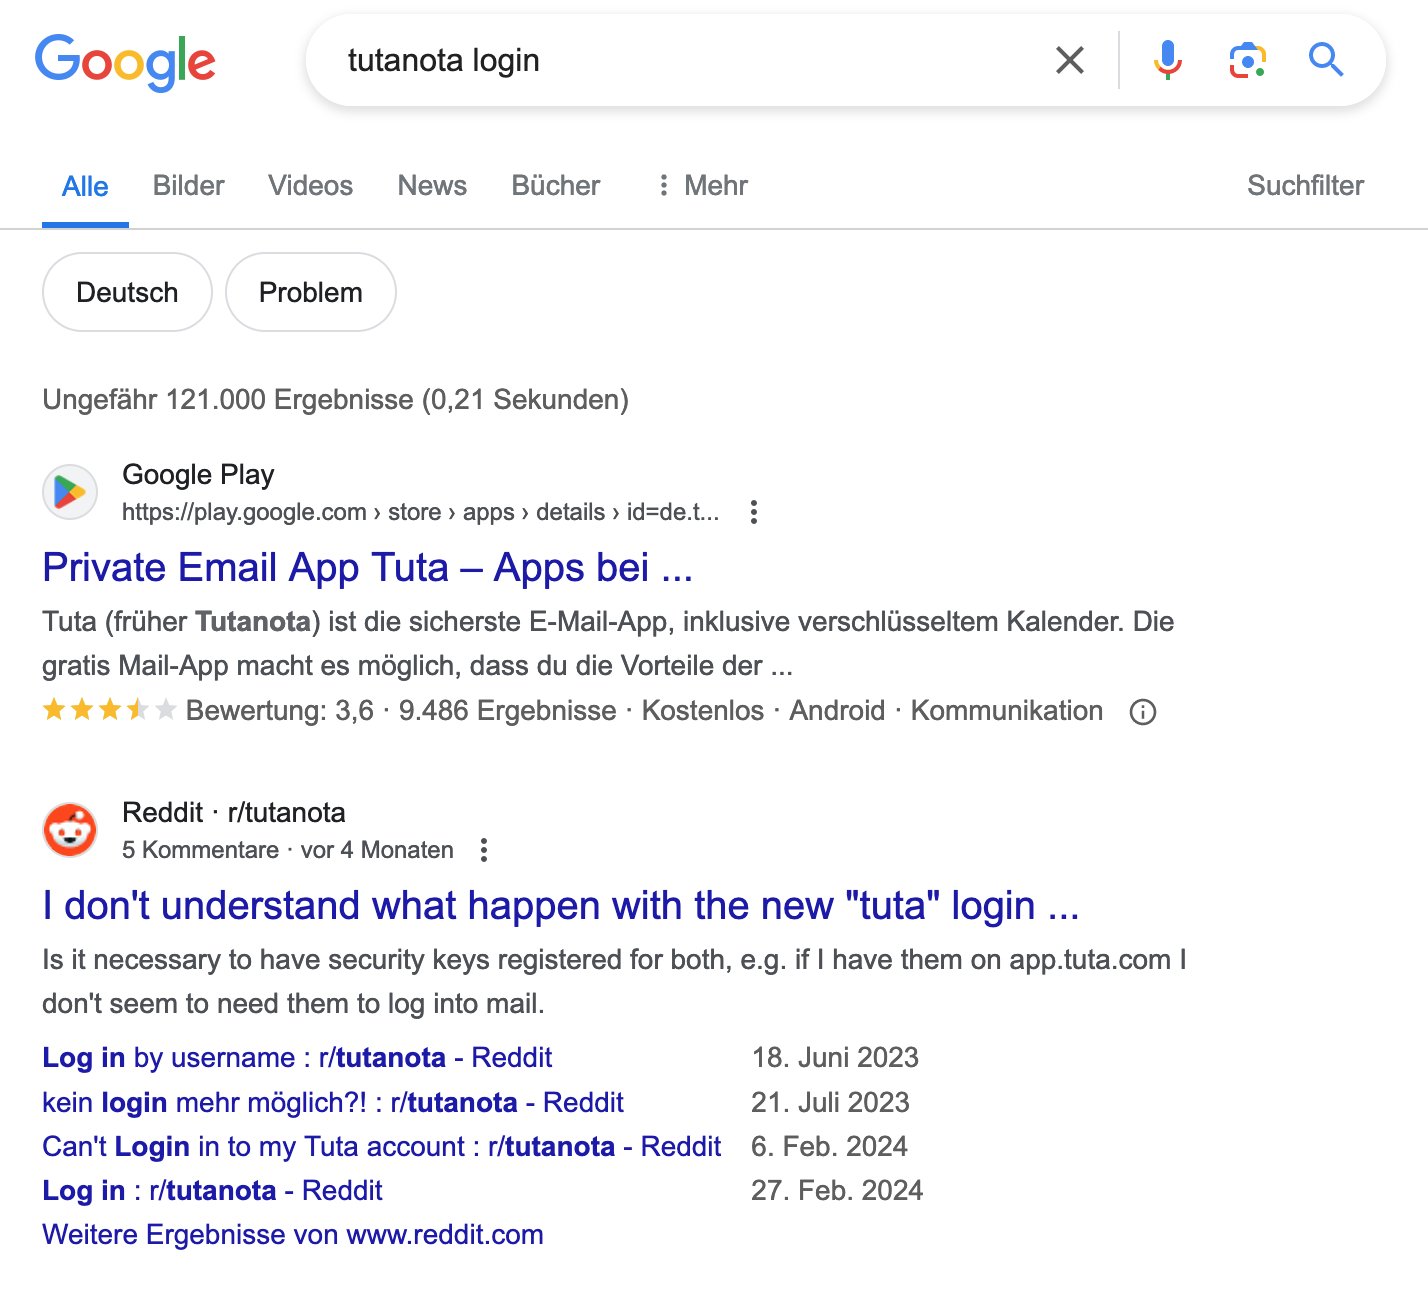 Google-Ergebnisse bei der Suche nach "Tutanota login" in Deutschland.